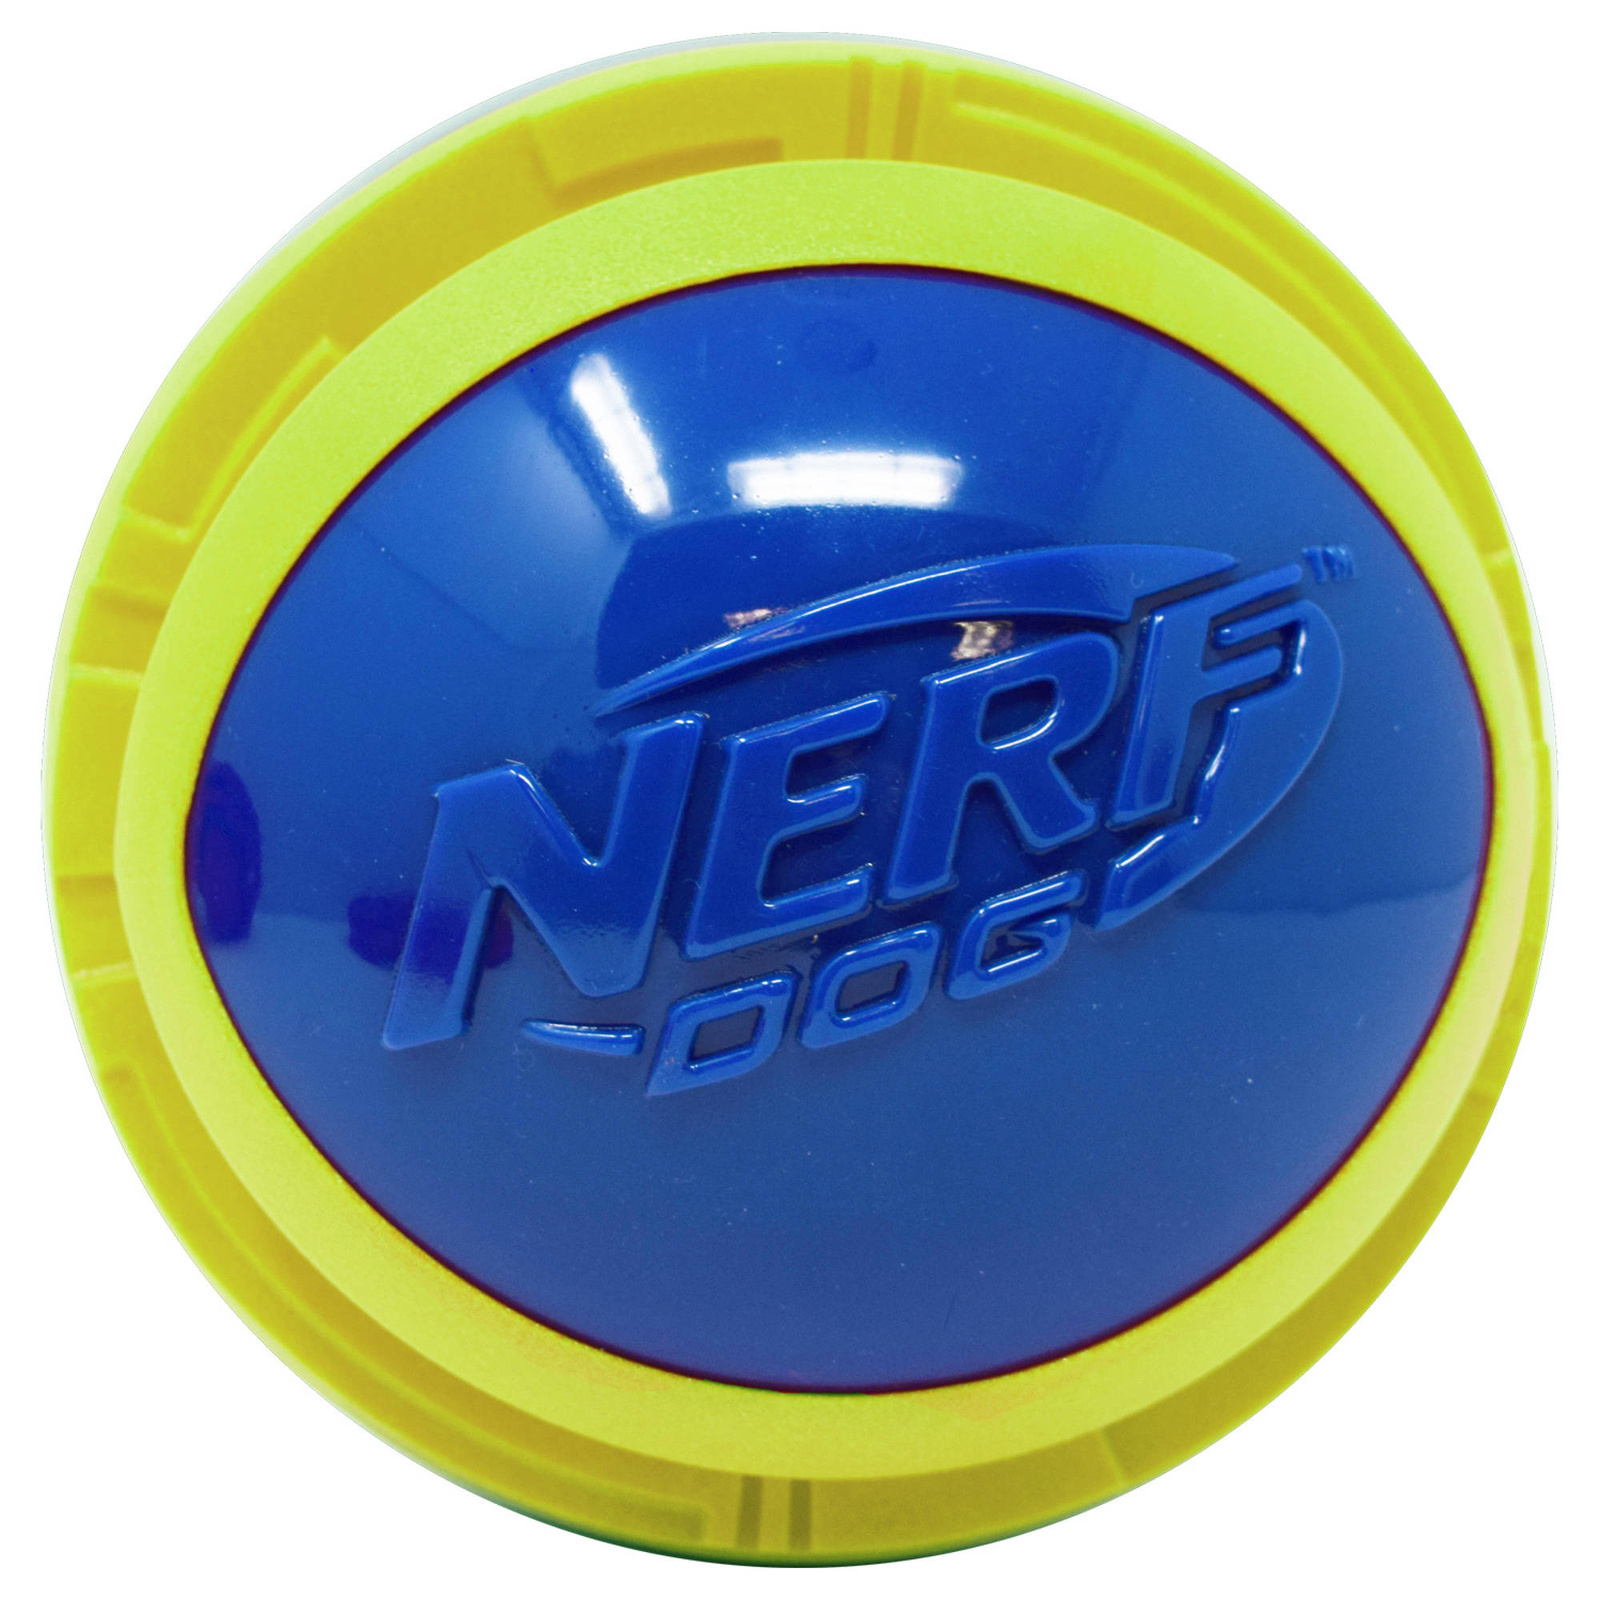 Nerf Nerf мяч из вспененной резины и термопластичной резины,14 см (серия Мегатон), (синий/зеленый) (390 г) nerf мяч для регби из термопластичной резины 18 см серия мегатон синийоранжевый 53957 0 254 кг 57276 1 шт